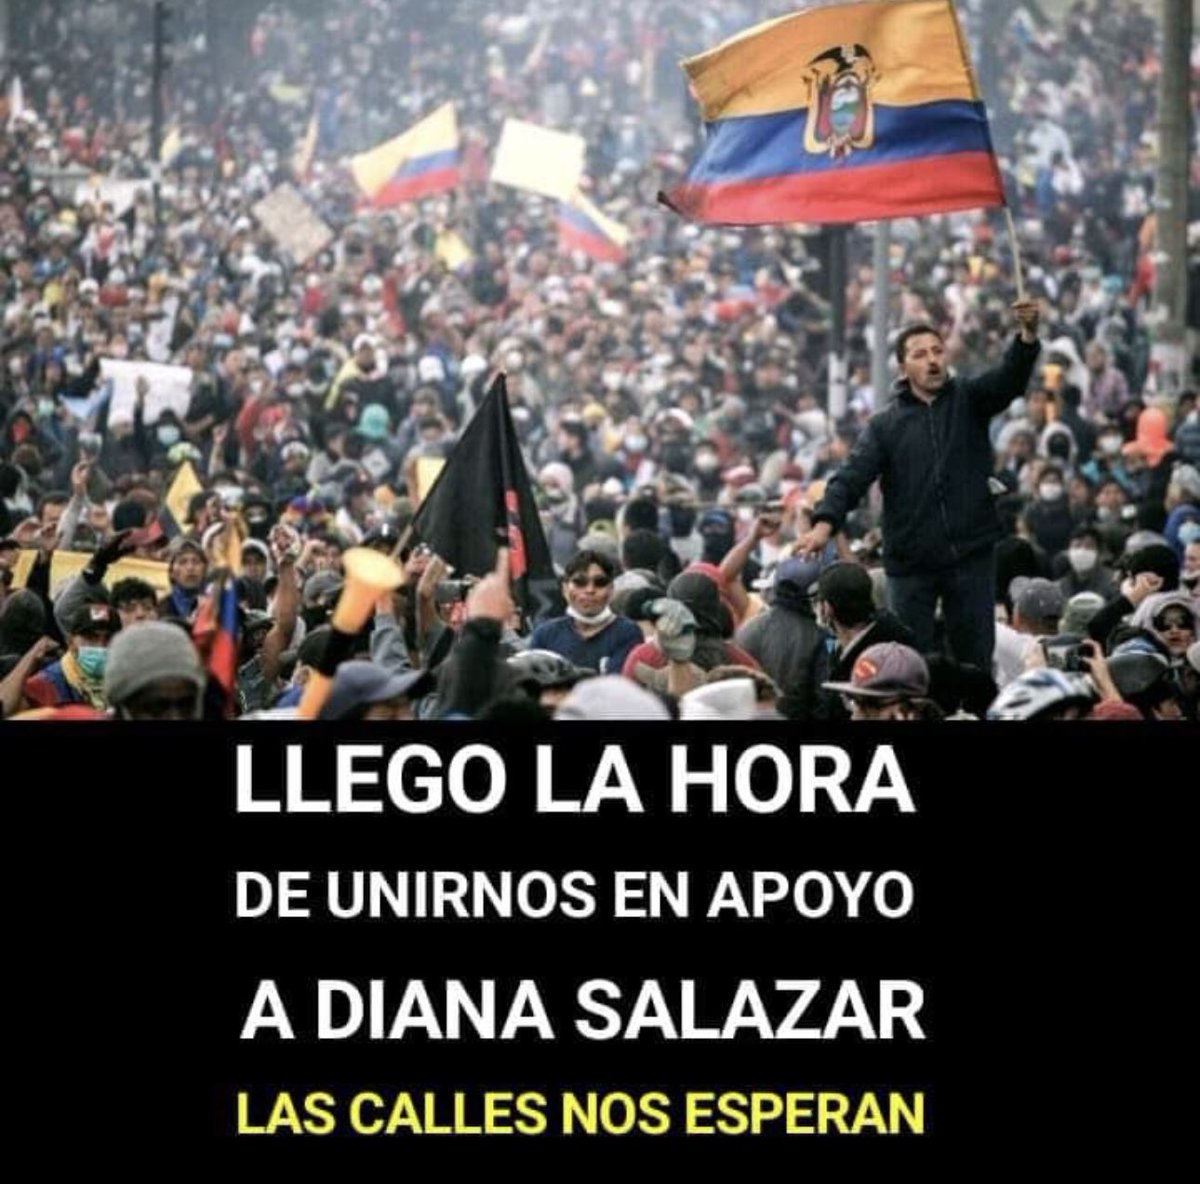 🔴 URGENTE: ¡APOYO MASIVO PARA DIANA SALAZAR! 📢 Nos reuniremos en el Parque El Arbolito, Ciudad de Quito, este Miércoles 27 de Marzo, a las 3 PM. ¡Es momento de unirnos como nación! 🇪🇨 Comparte este mensaje con tus familiares, amigos y en todos tus grupos ✊